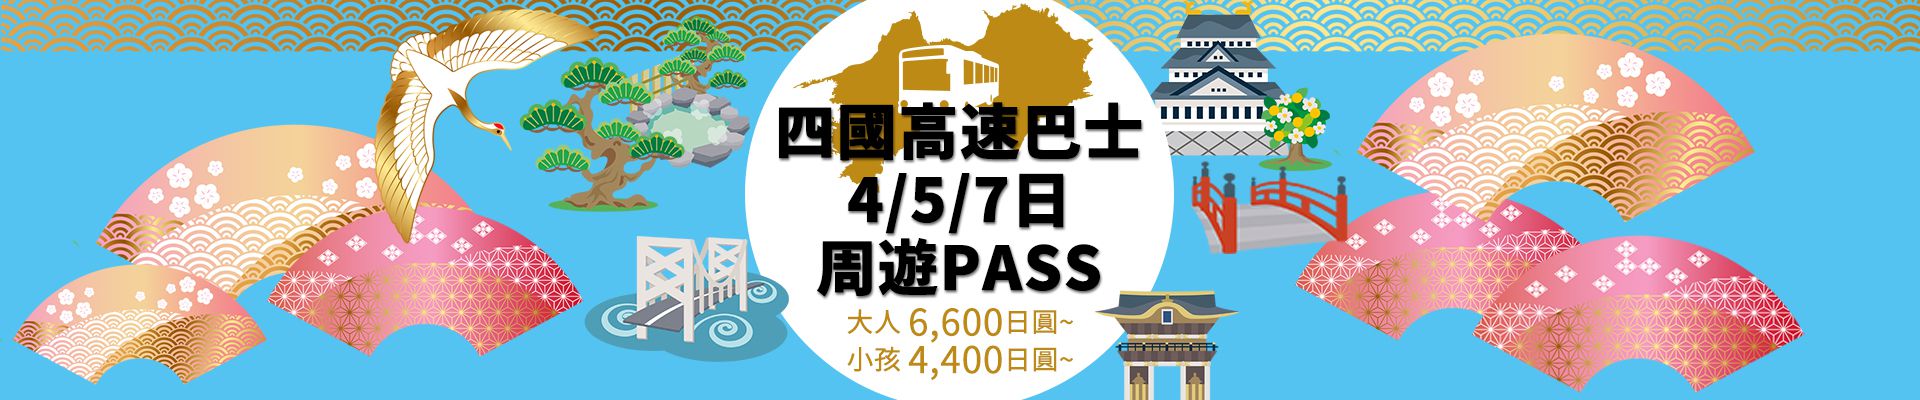 四國高速巴士 4/5/7日周遊PASS